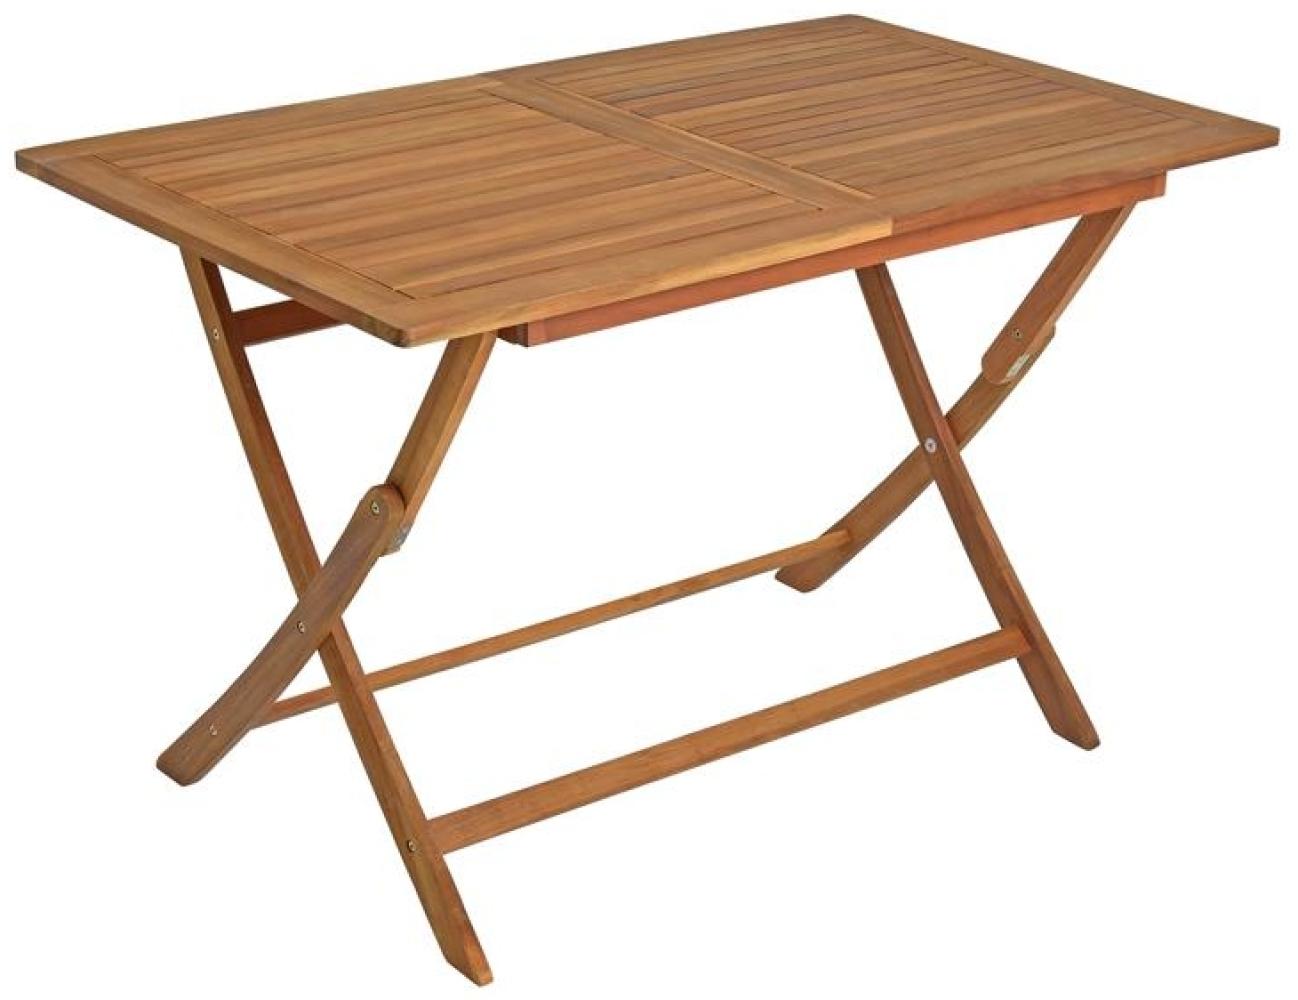 Gartentisch Holztisch Tisch Balkontisch Akazie Holz Esstisch Gartenmöbel Eckig Bild 1